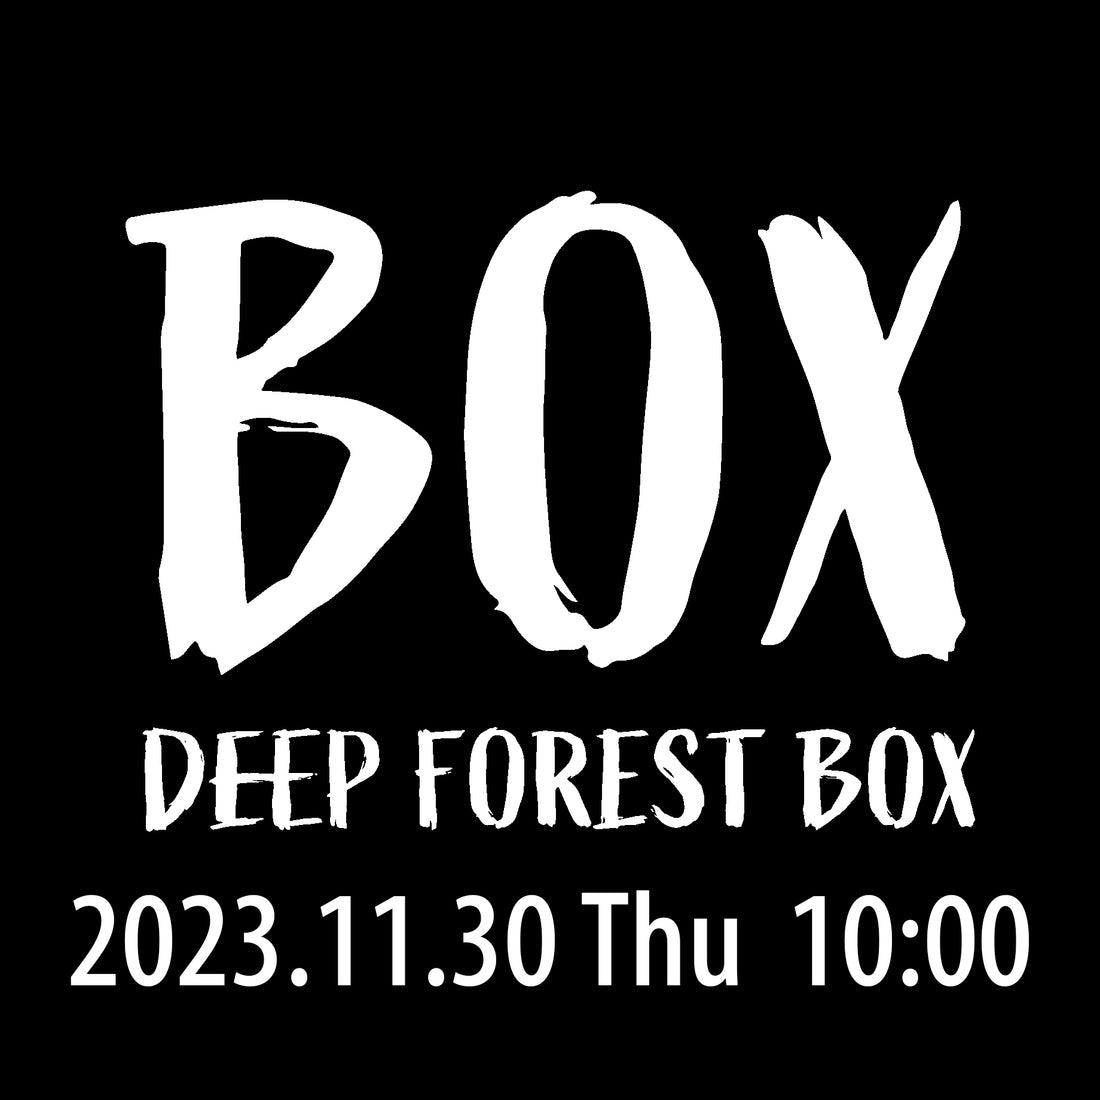 自伐林業家がこれからの地域林業を考えるオフラインイベント【DEEP FOREST BOX】開催のお知らせ